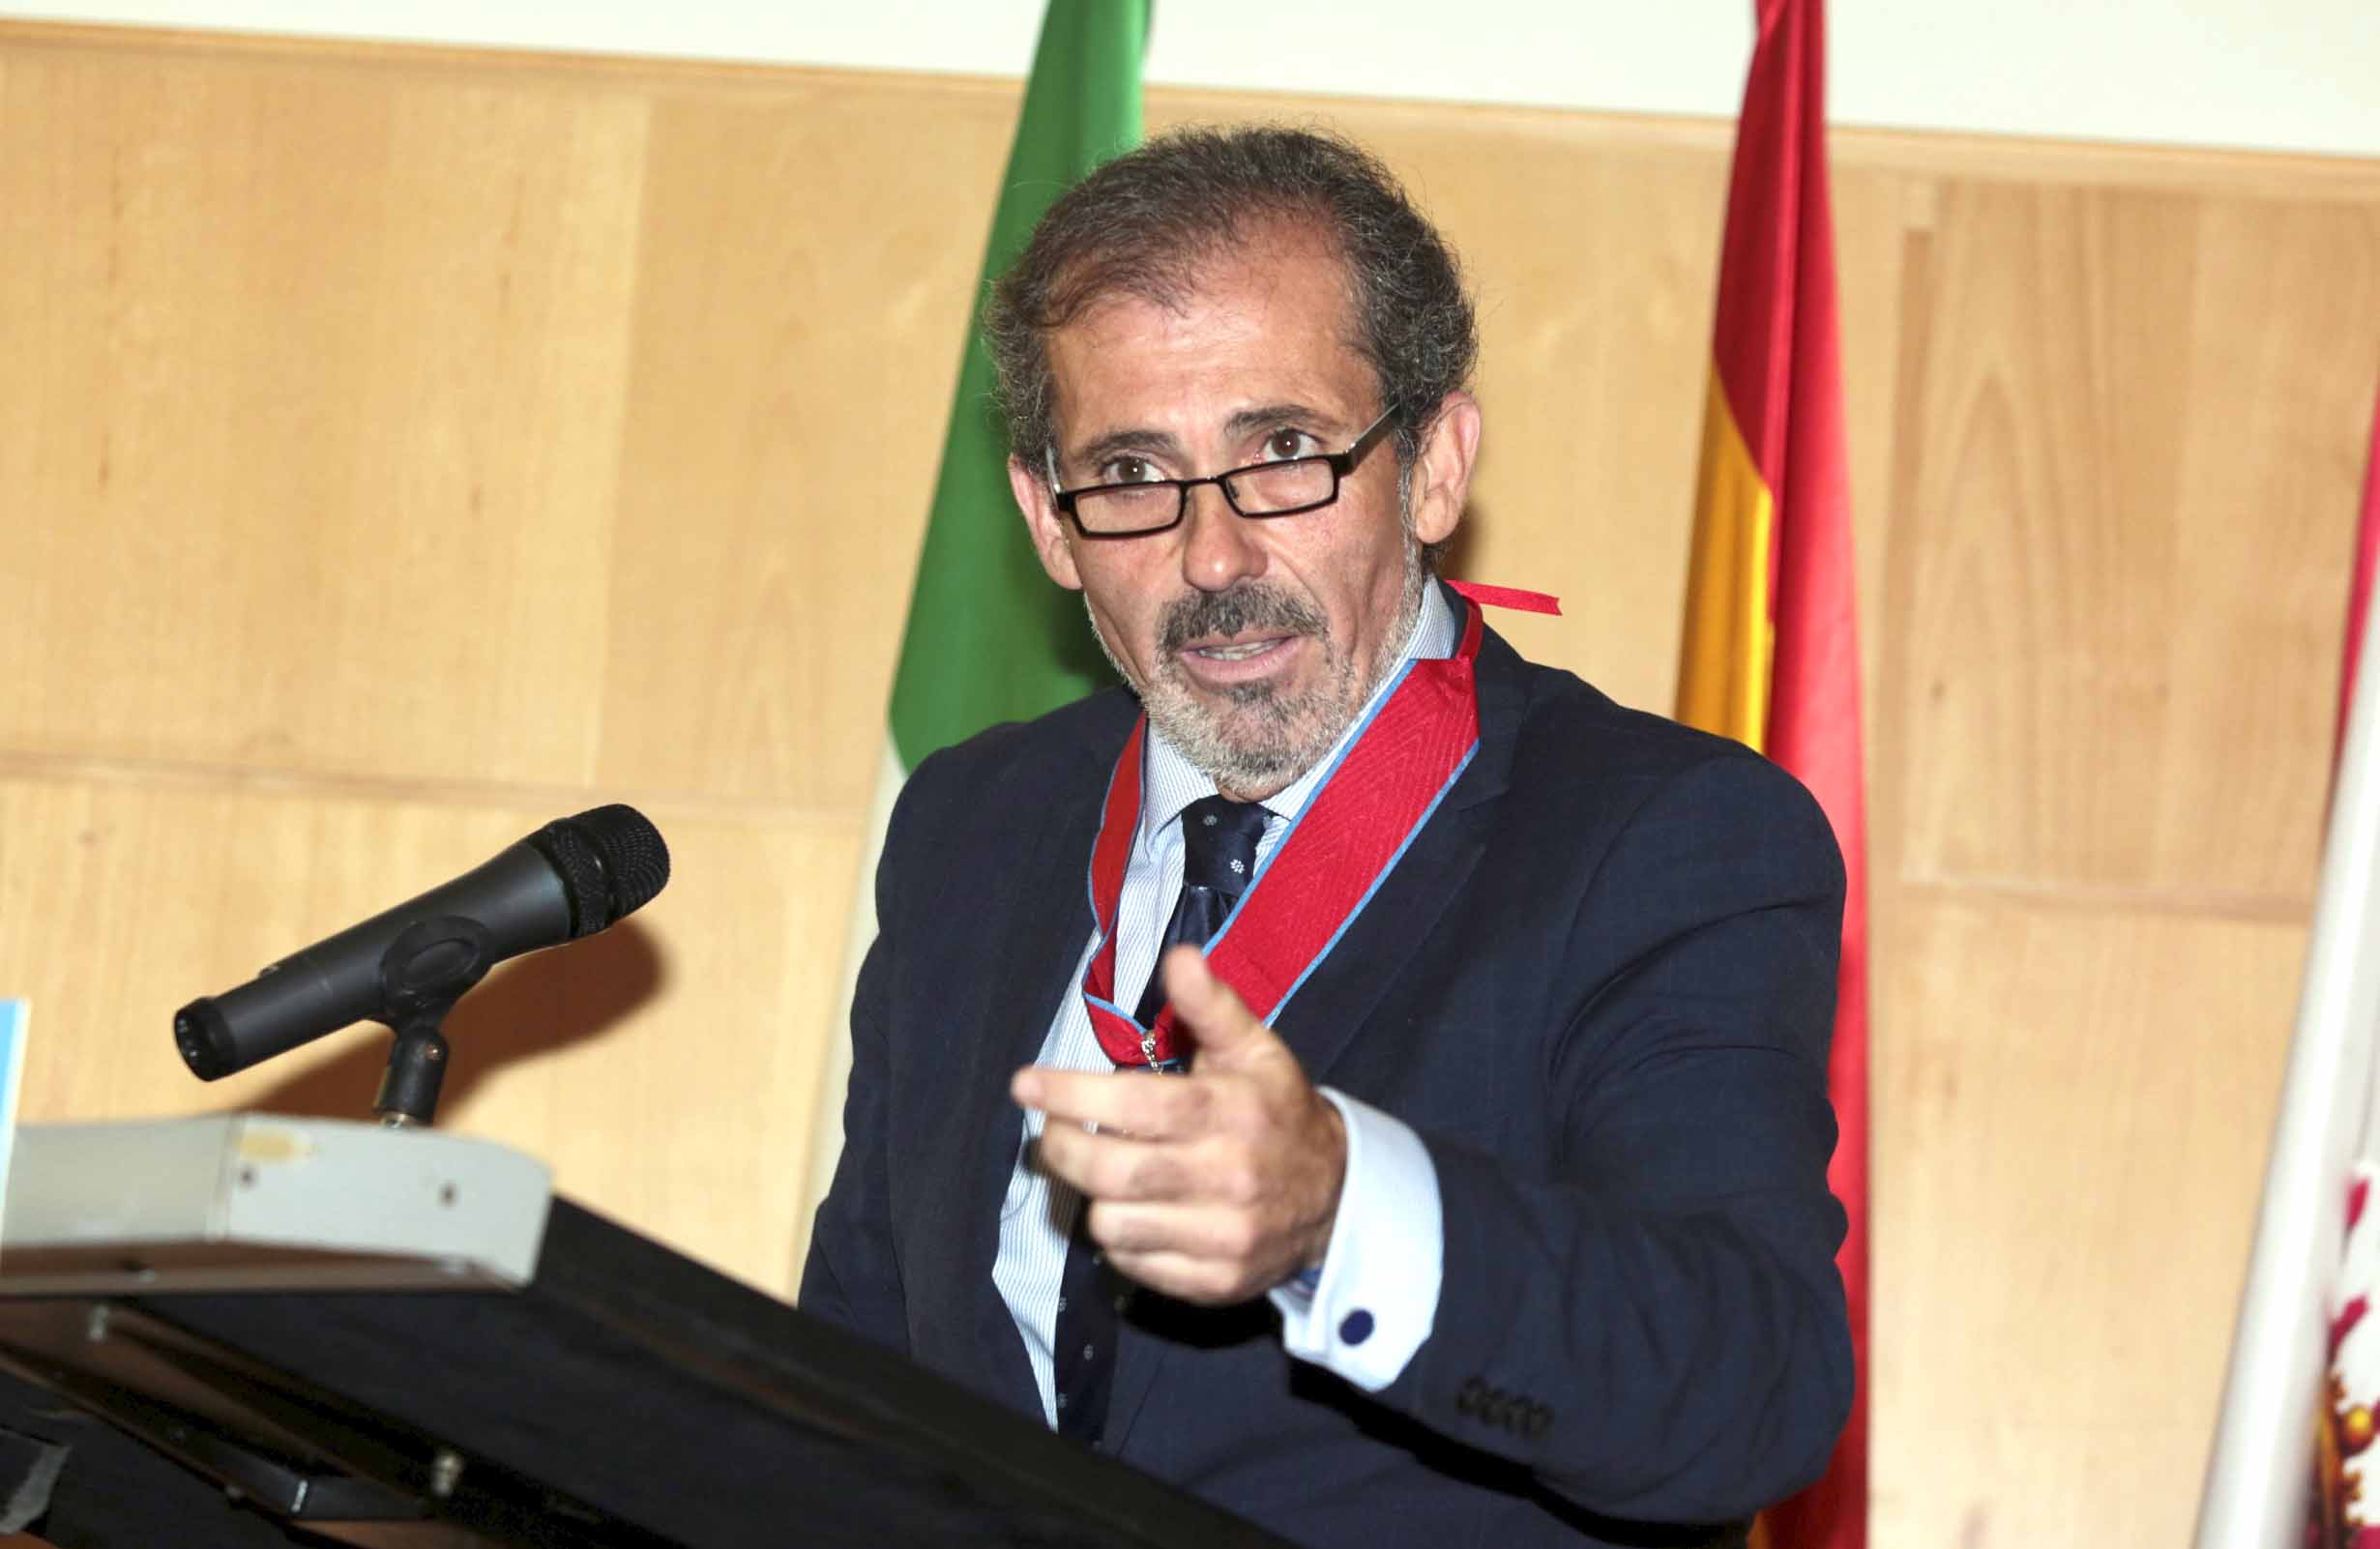 Francisco Javier Lara, decano de Málaga: “Los cambios tecnológicos están transformando la forma de ejercer la abogacía”